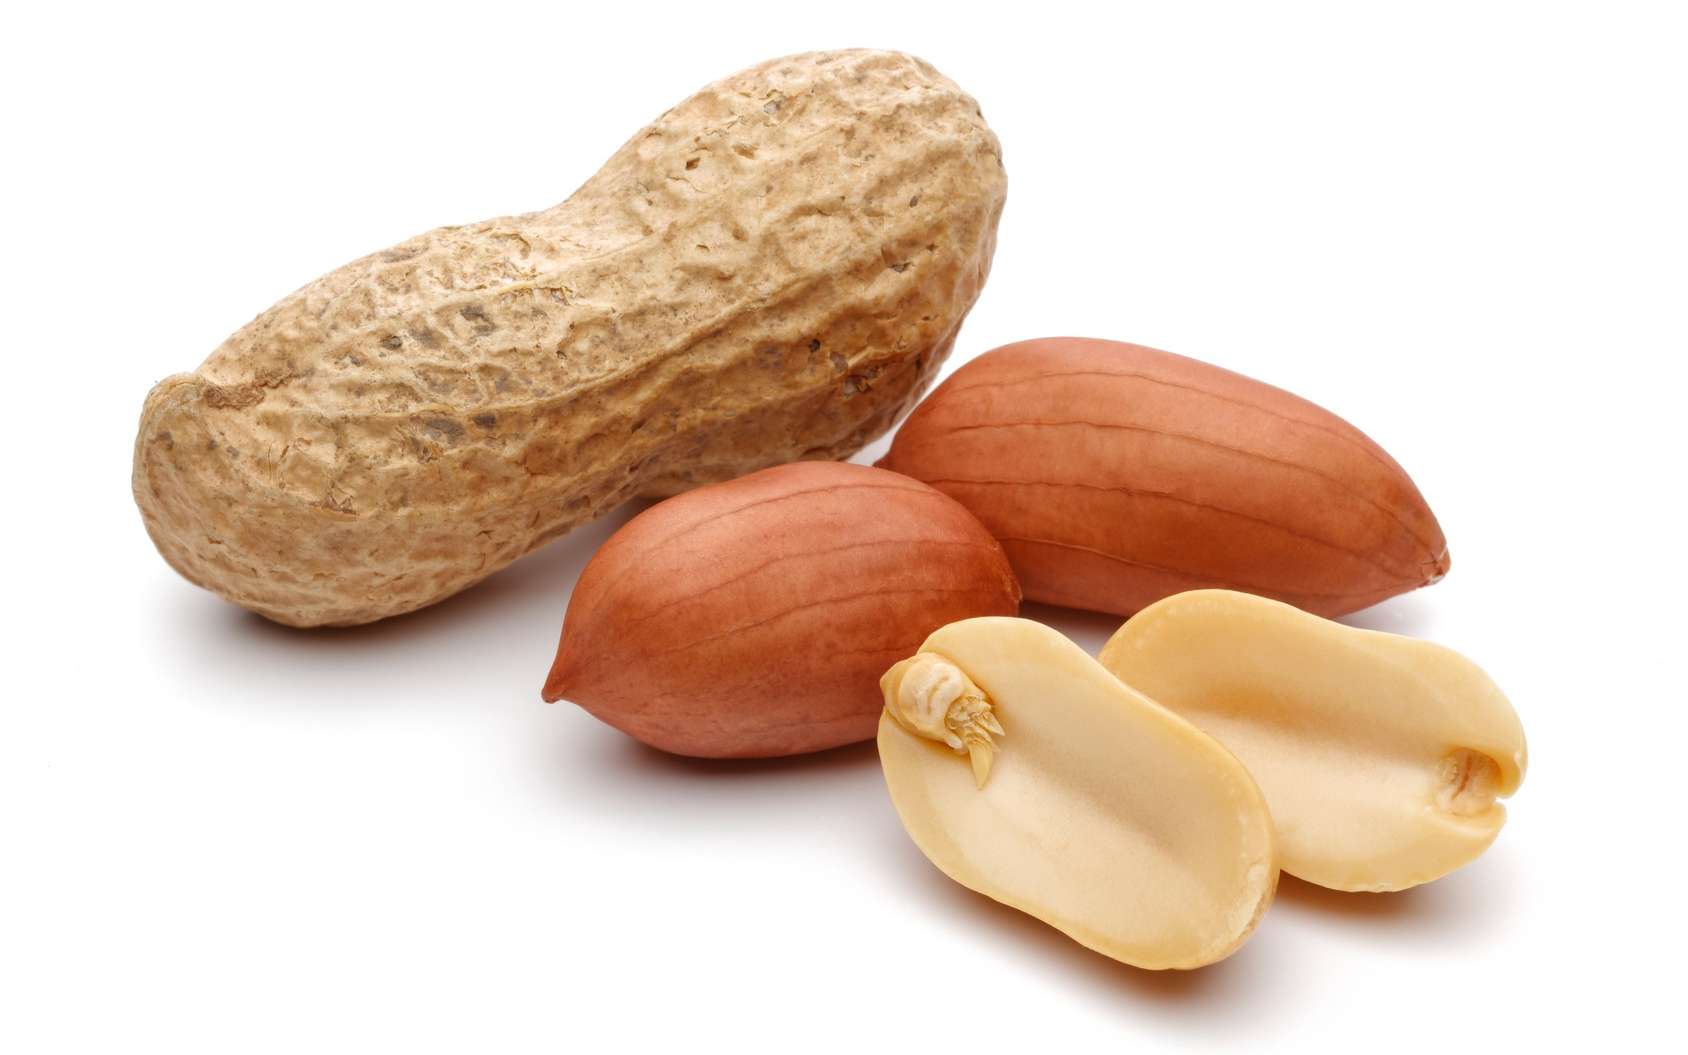 L’arachide, ou cacahuète, est à l’origine d’une grave allergie alimentaire. © mahirart, Fotolia